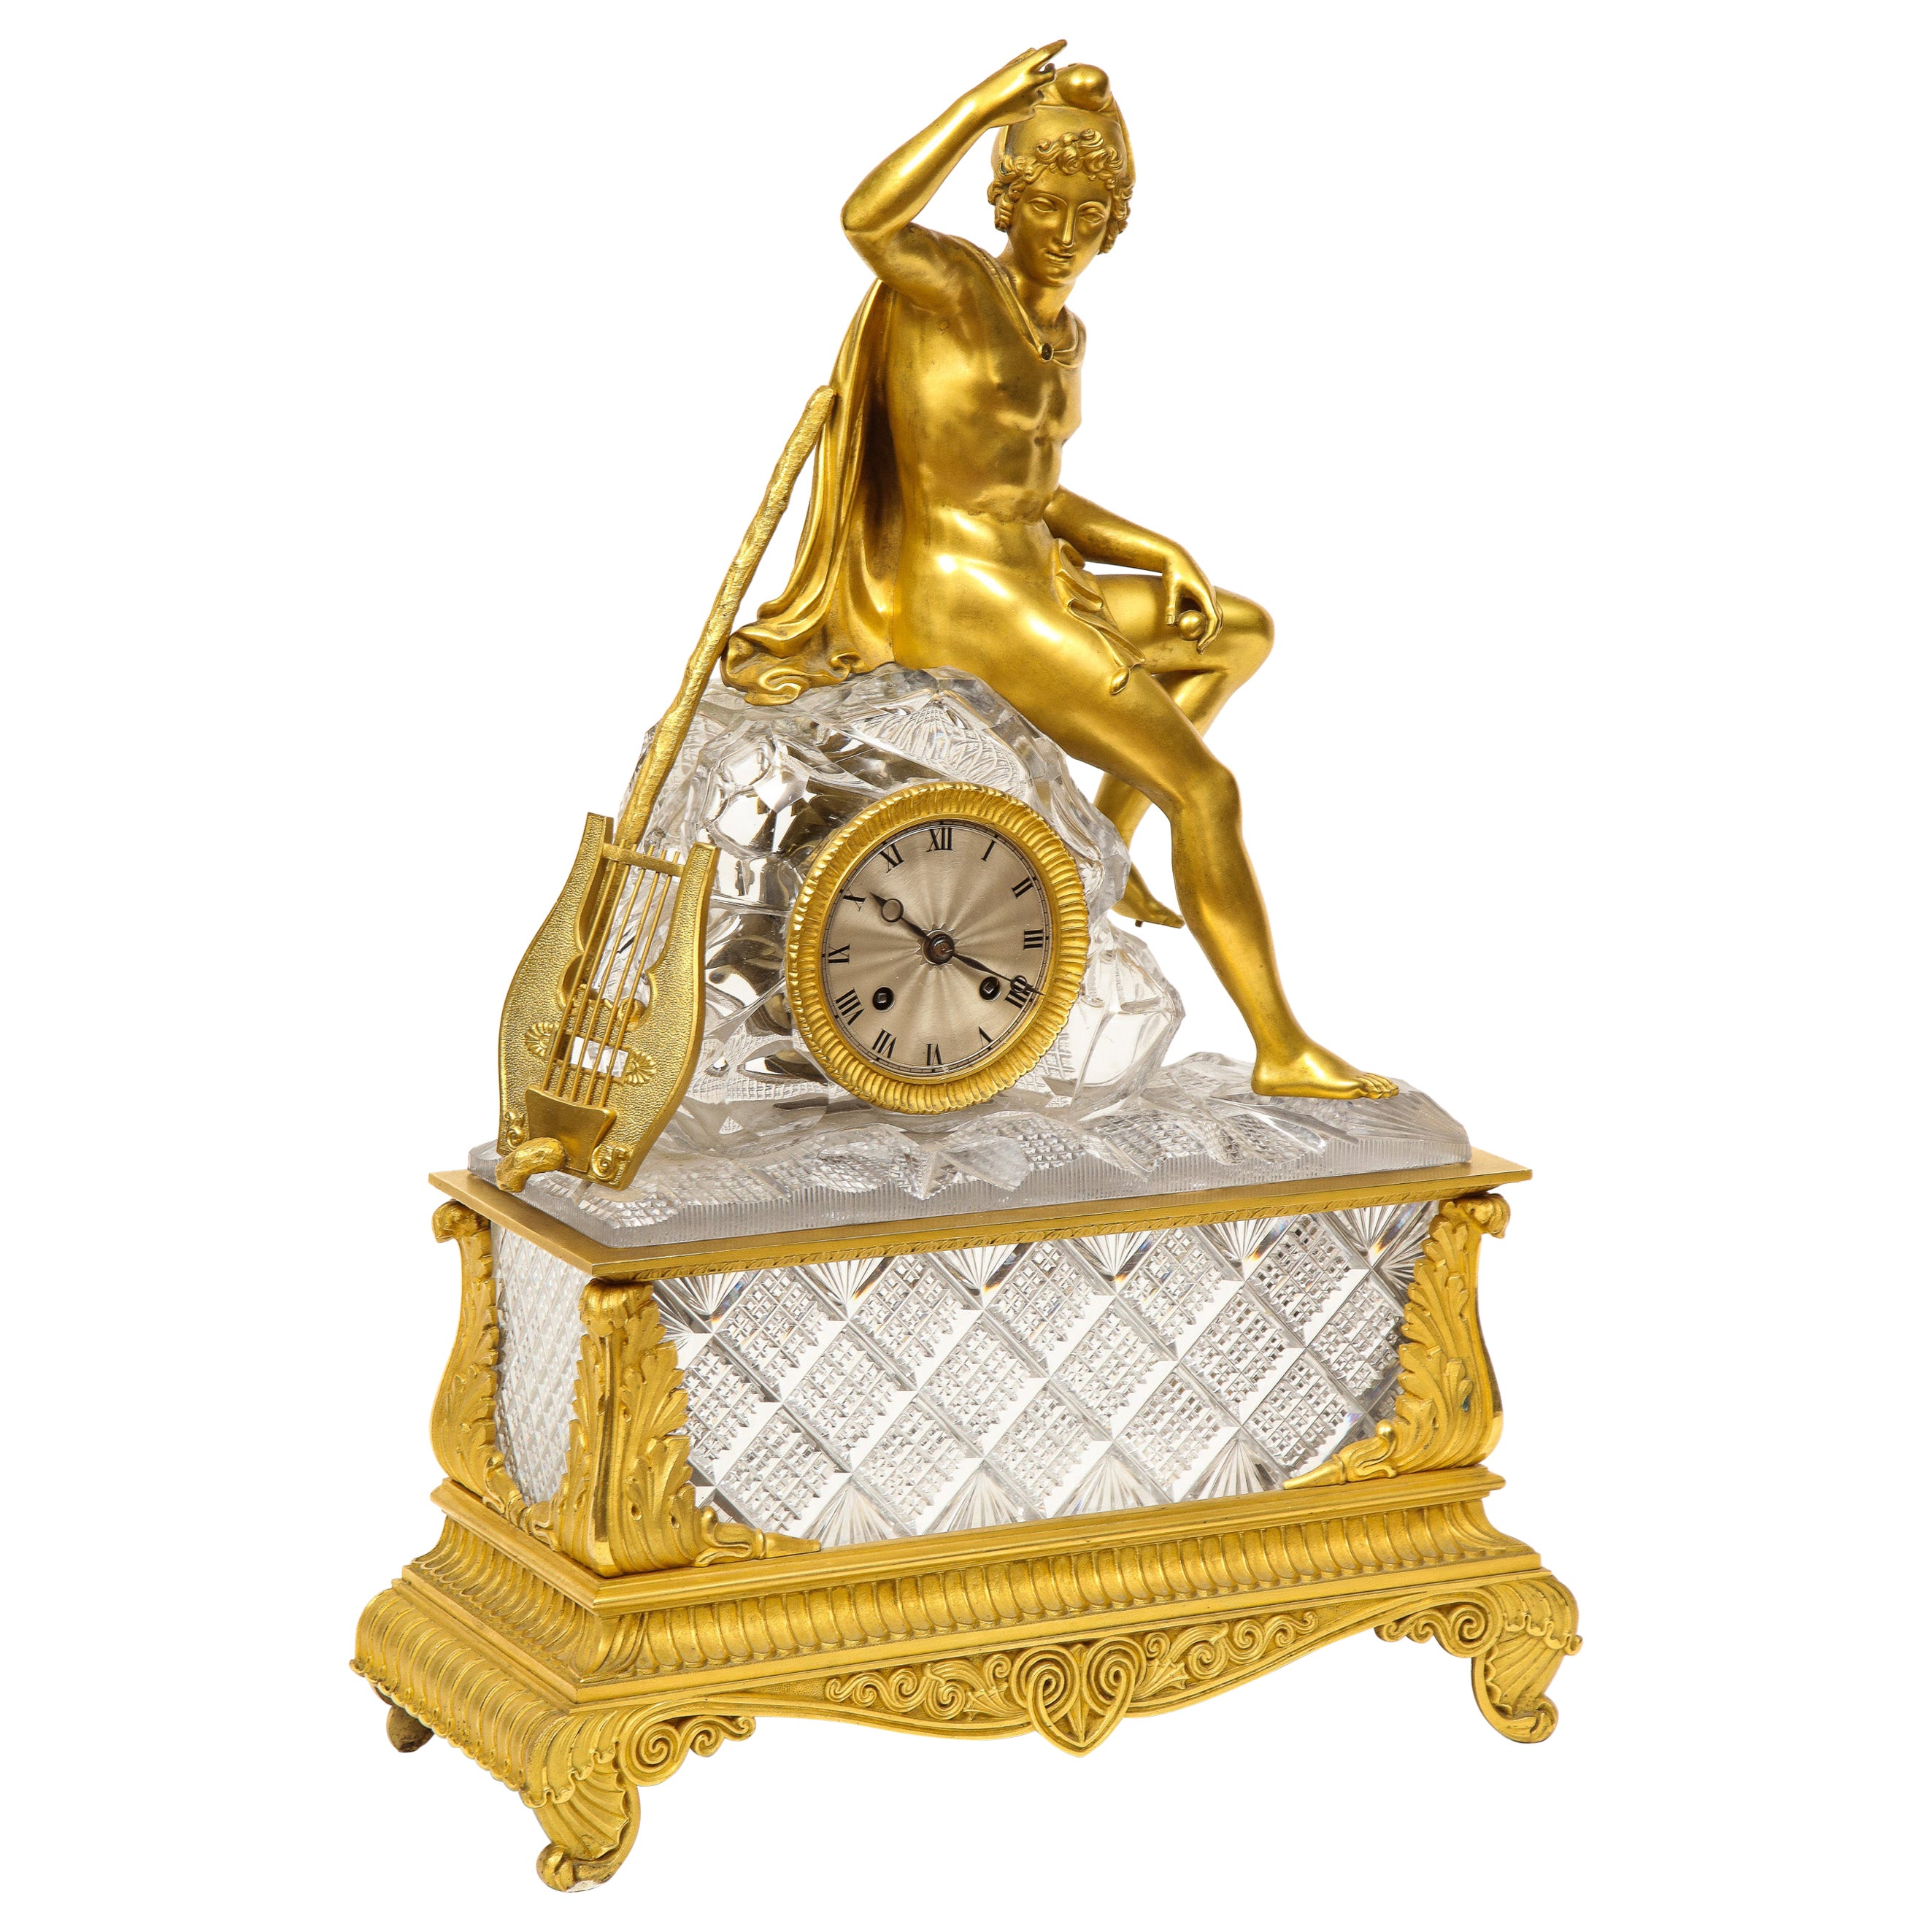 Exquisite französische Empire-Uhr aus Goldbronze und geschliffenem Kristall, um 1815